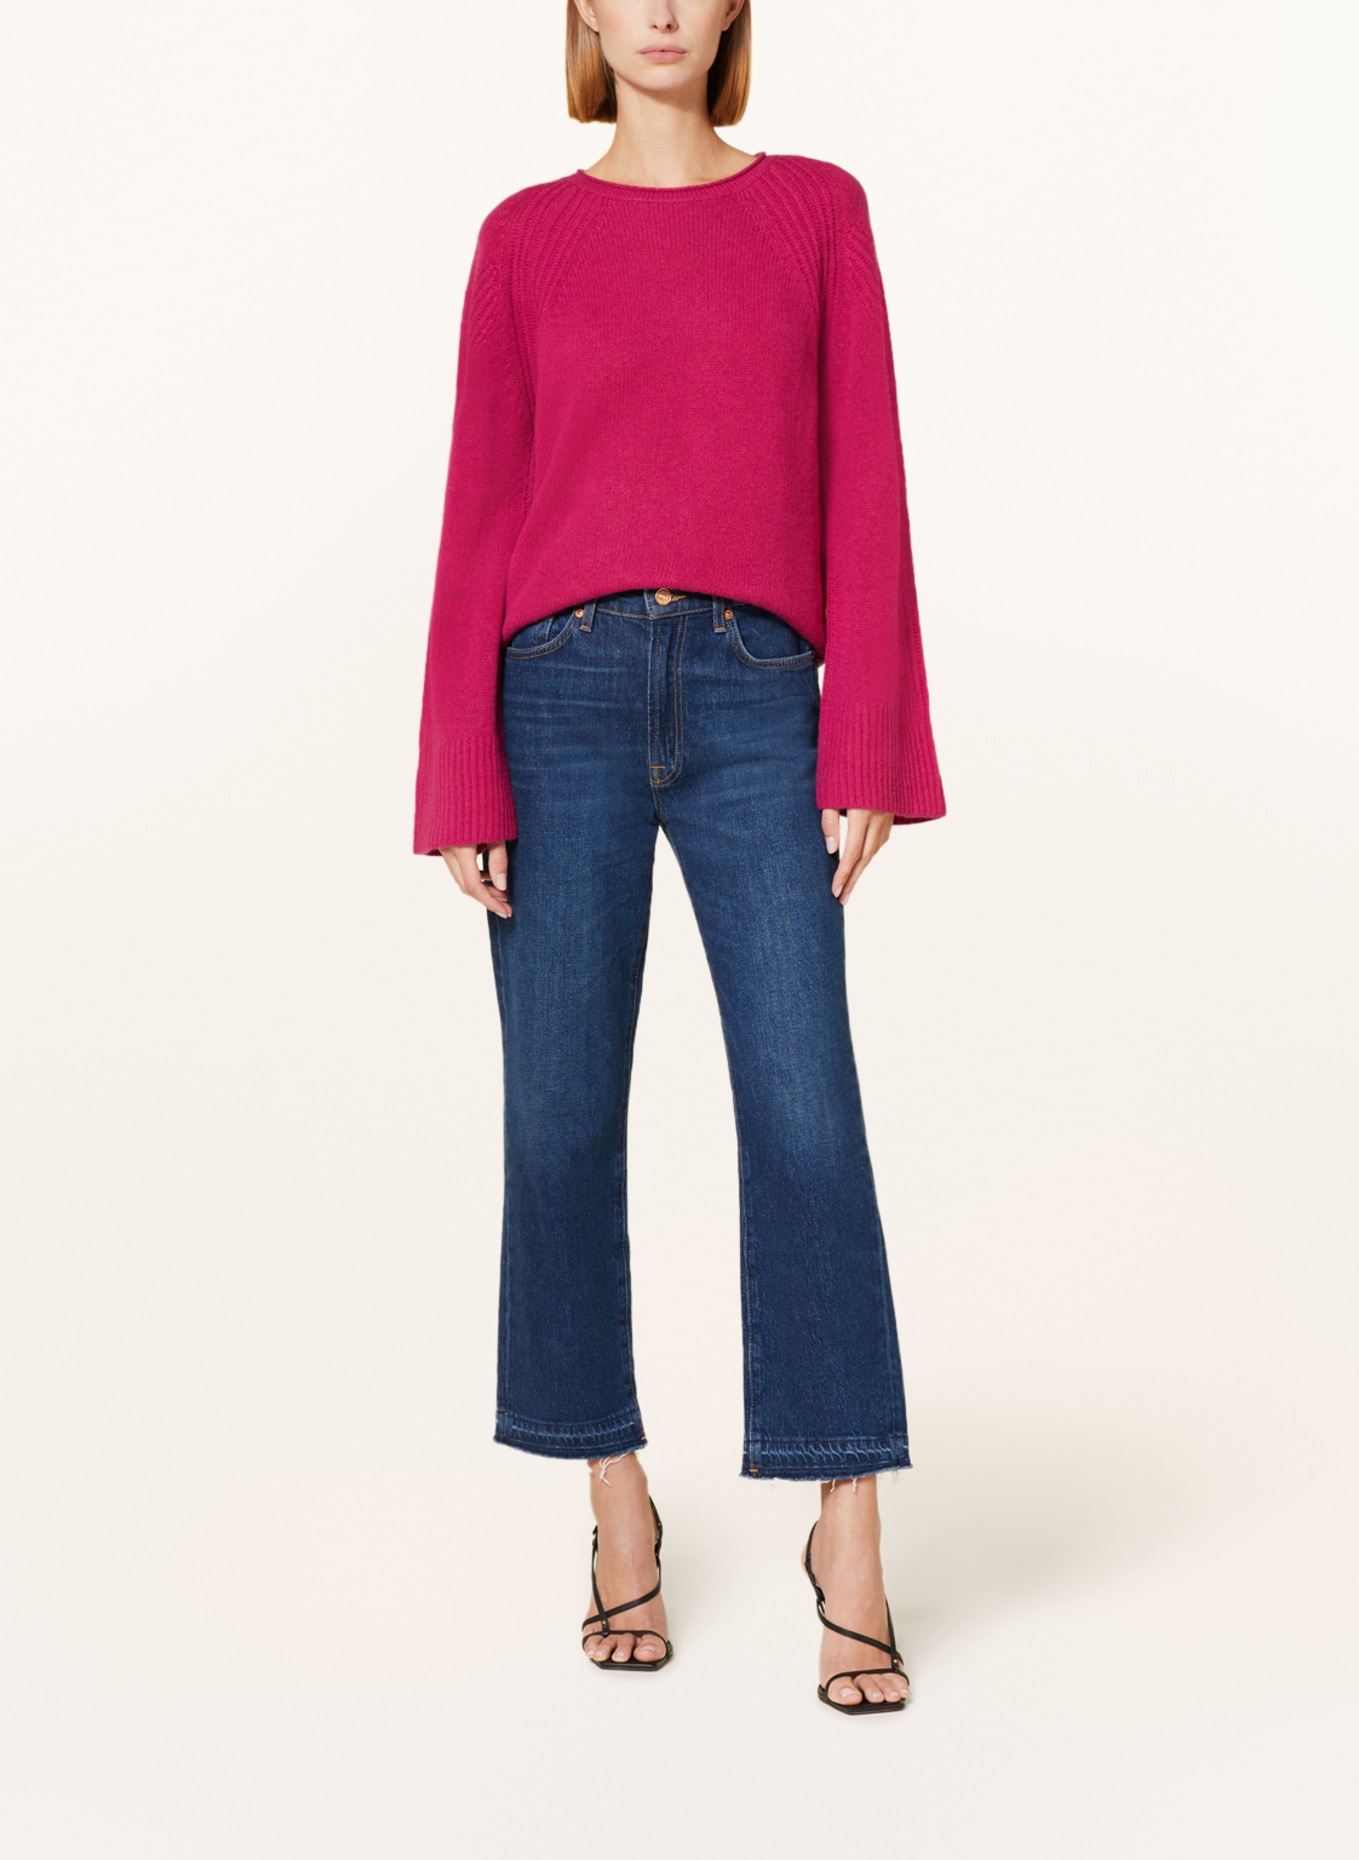 LUISA CERANO Sweater, Color: FUCHSIA (Image 2)